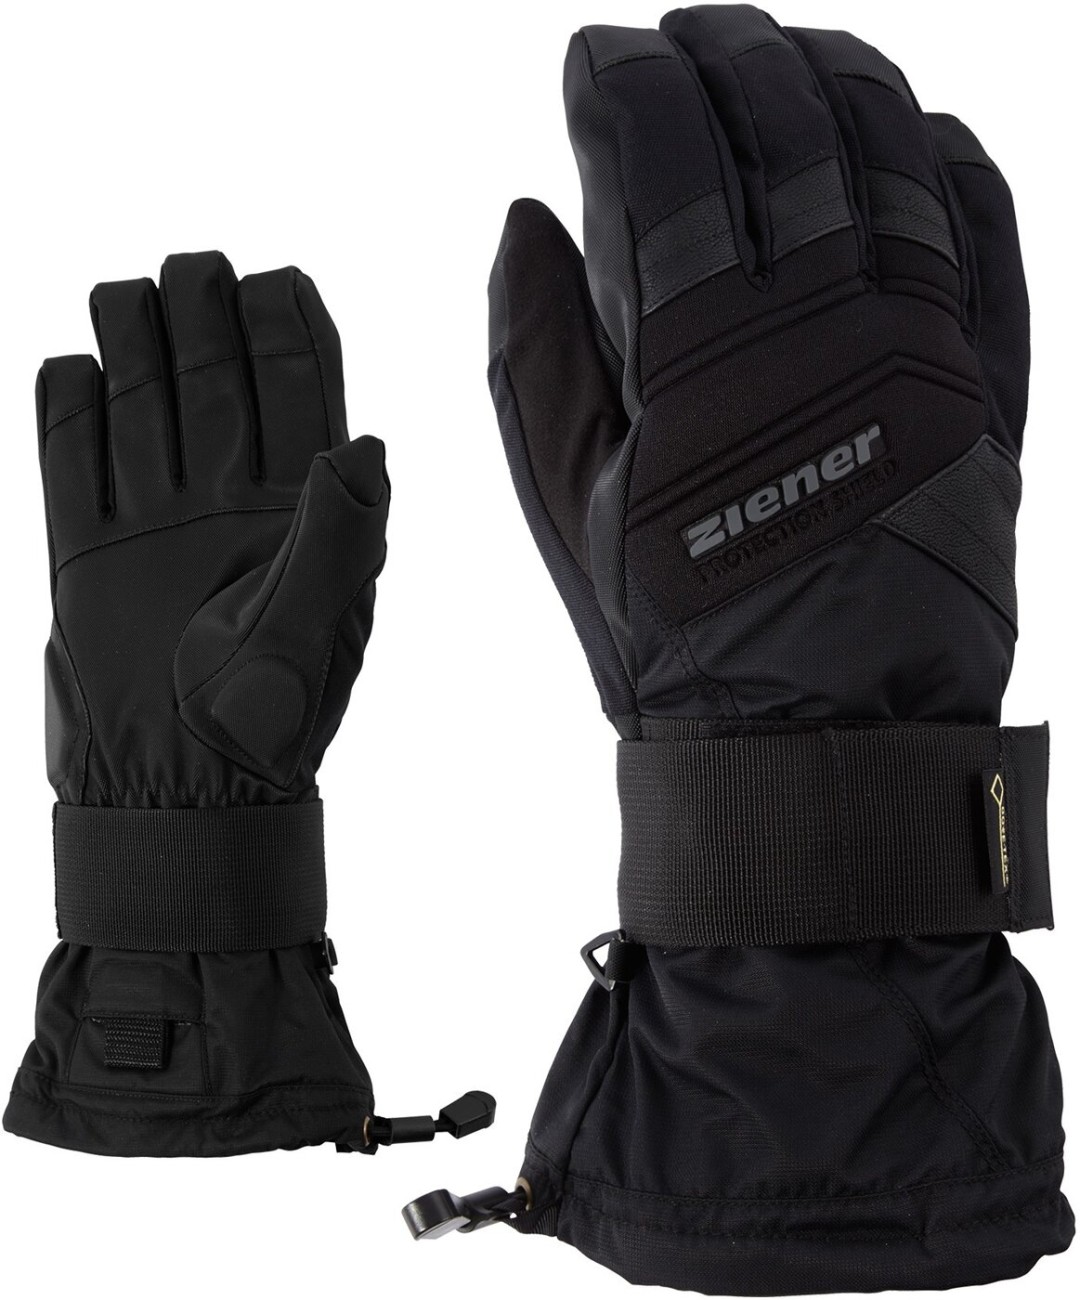 MEDICAL black kaufen SB glove GTX online ZIENER 12